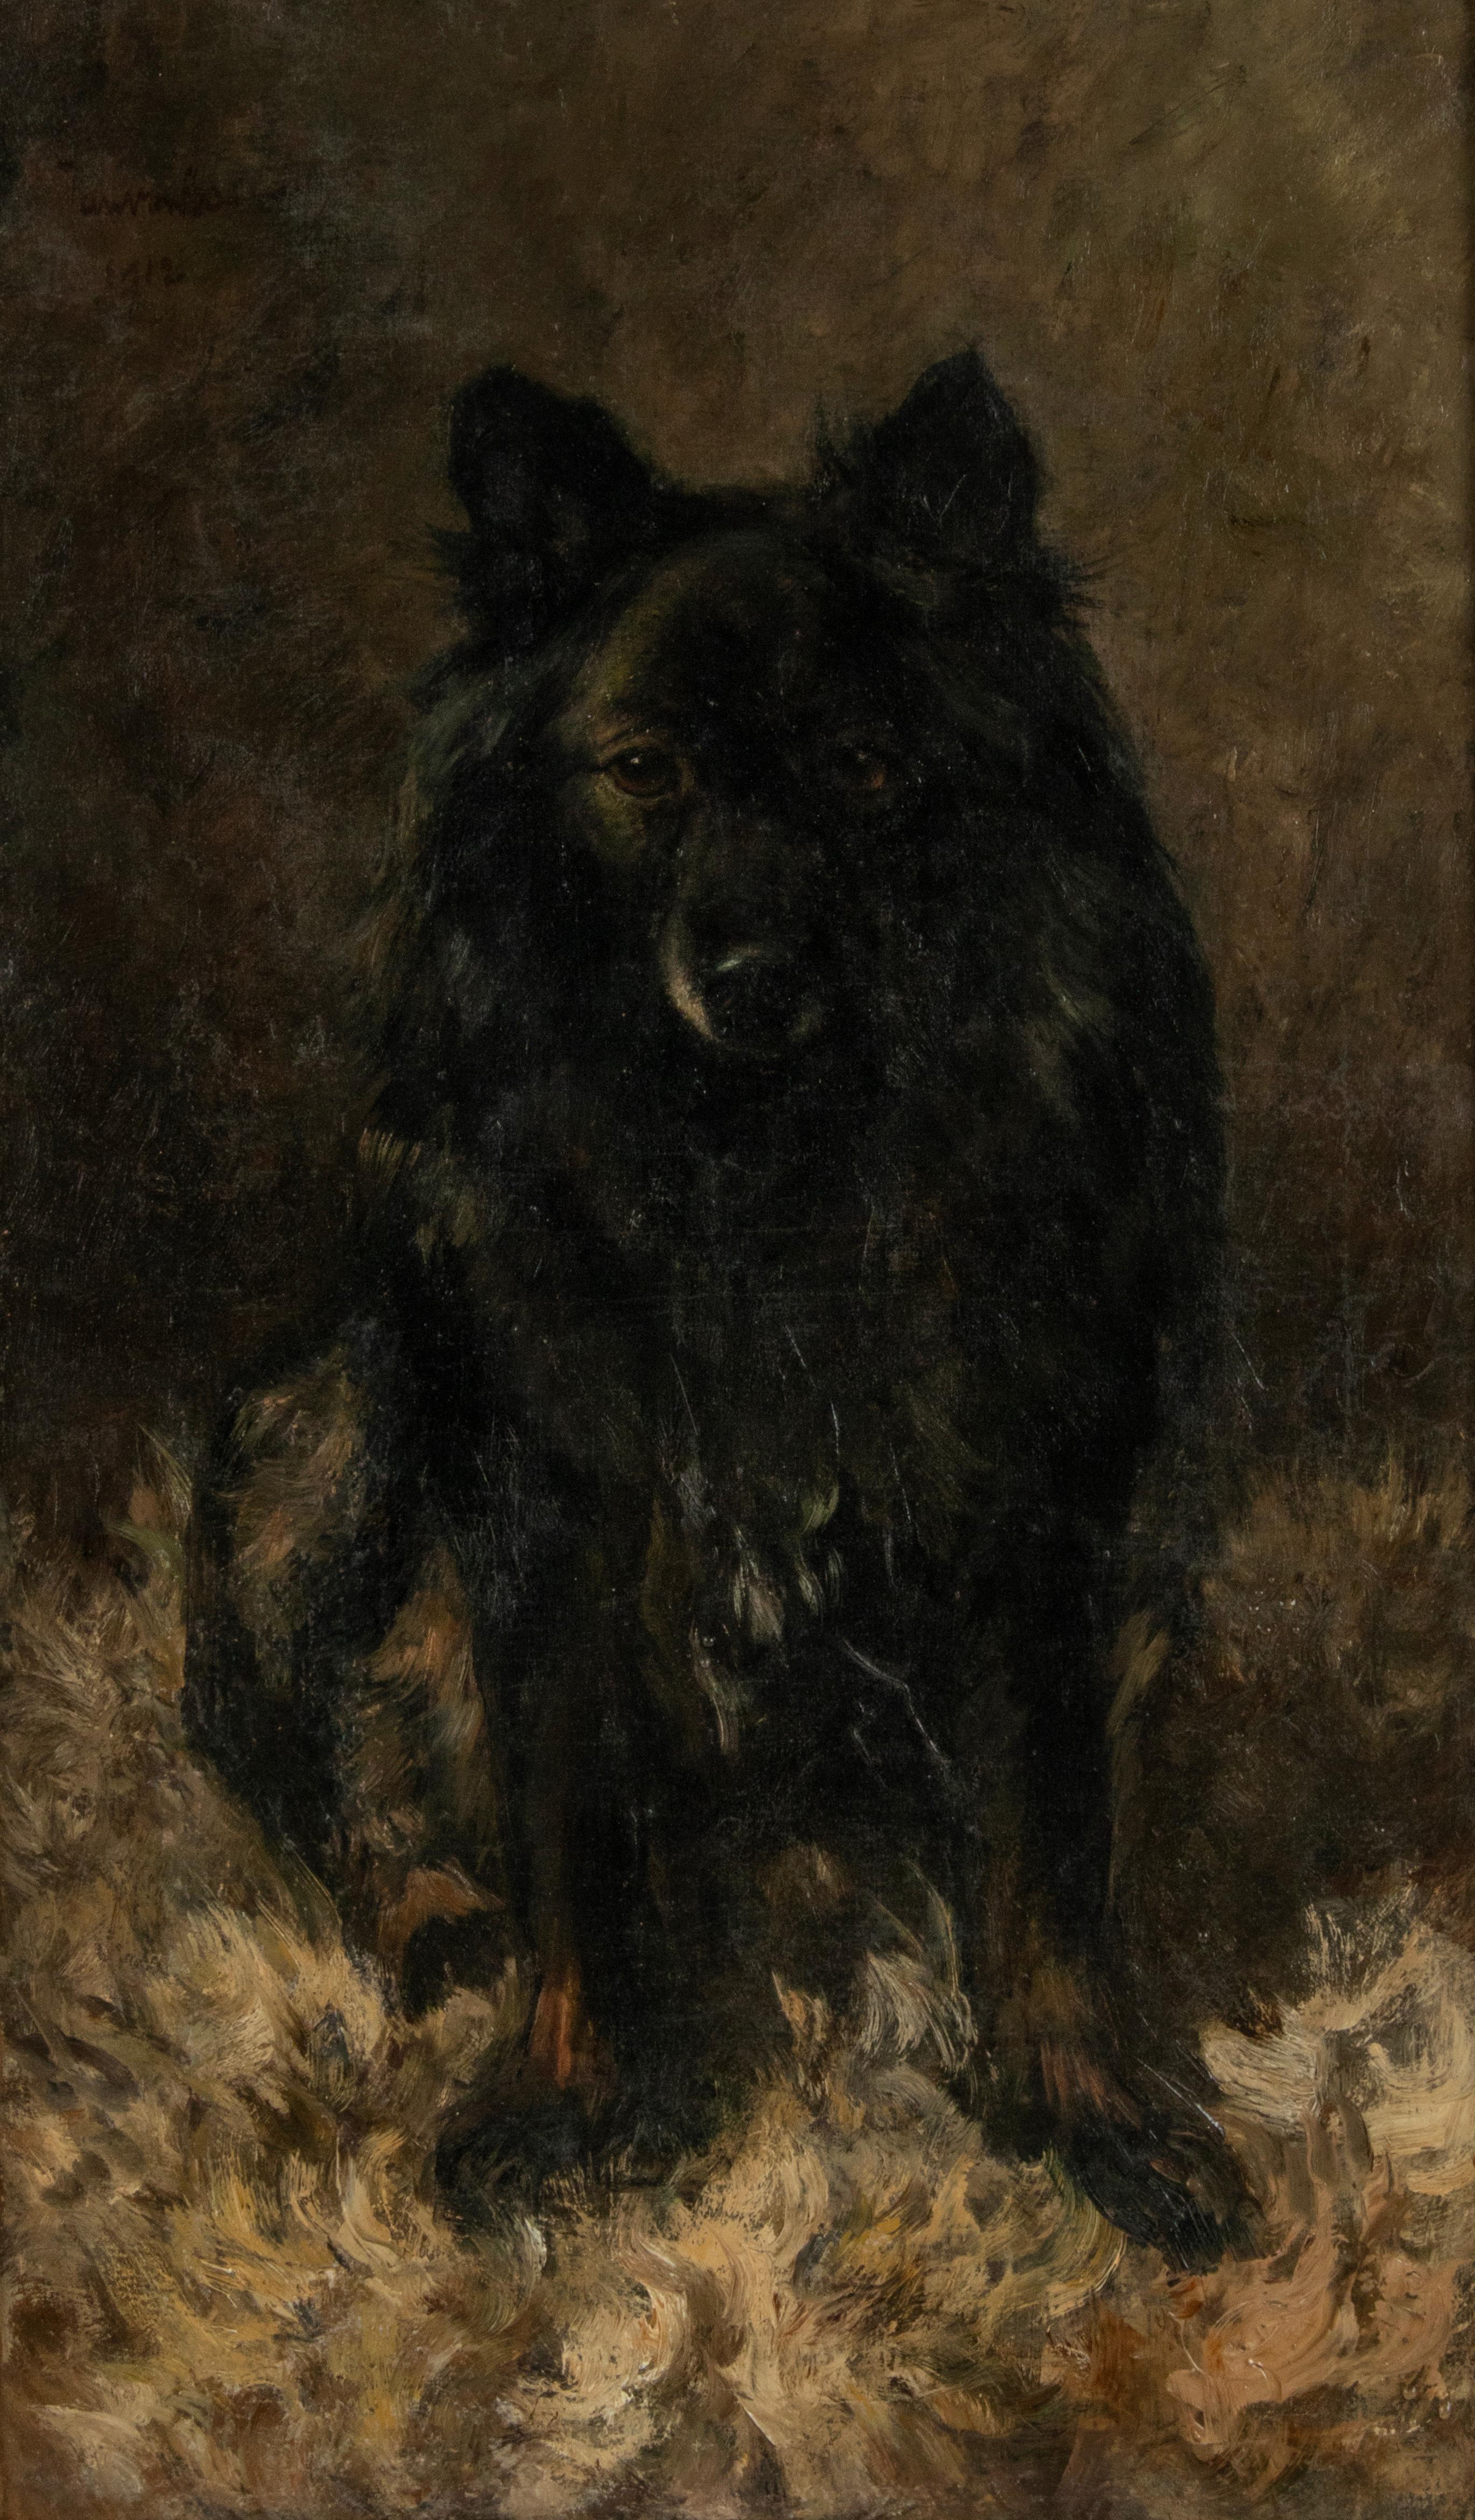 Precioso retrato de perro del pintor holandés Jan Essen. El cuadro muestra un Schipperke, que es una raza de perro que antes era más común que ahora. Es un pastor de pequeño tamaño, de origen belga. El pintor ha conseguido retratar al perro en su